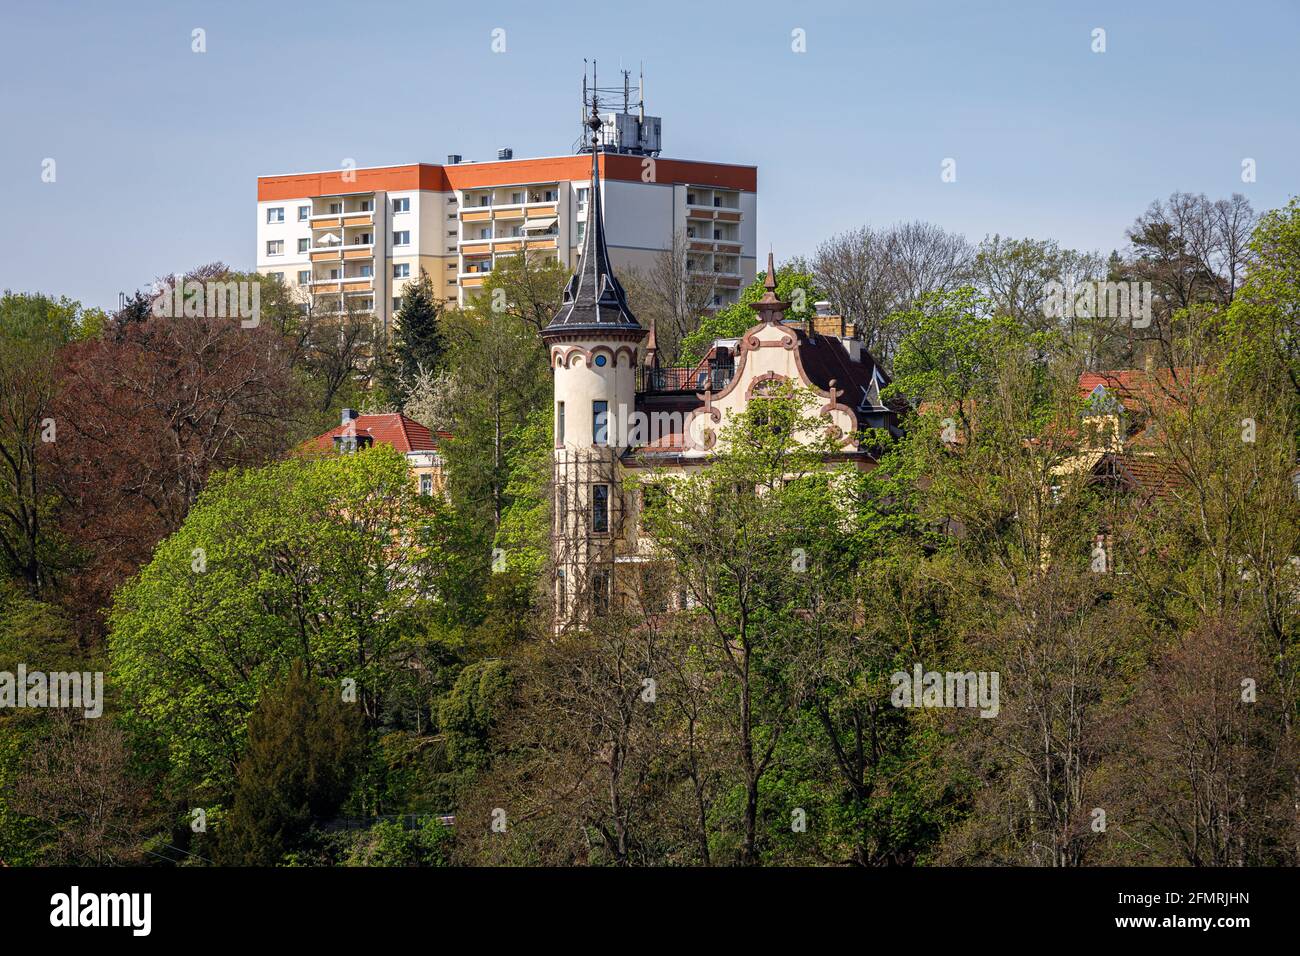 Grimma, Sachsen, Deutschland- 05 11 2021, die kleine Stadt an der Mulde ist bekannt als die "Perle des Muldetals"-moderne Hochwasserschutzmauer in der Stockfoto